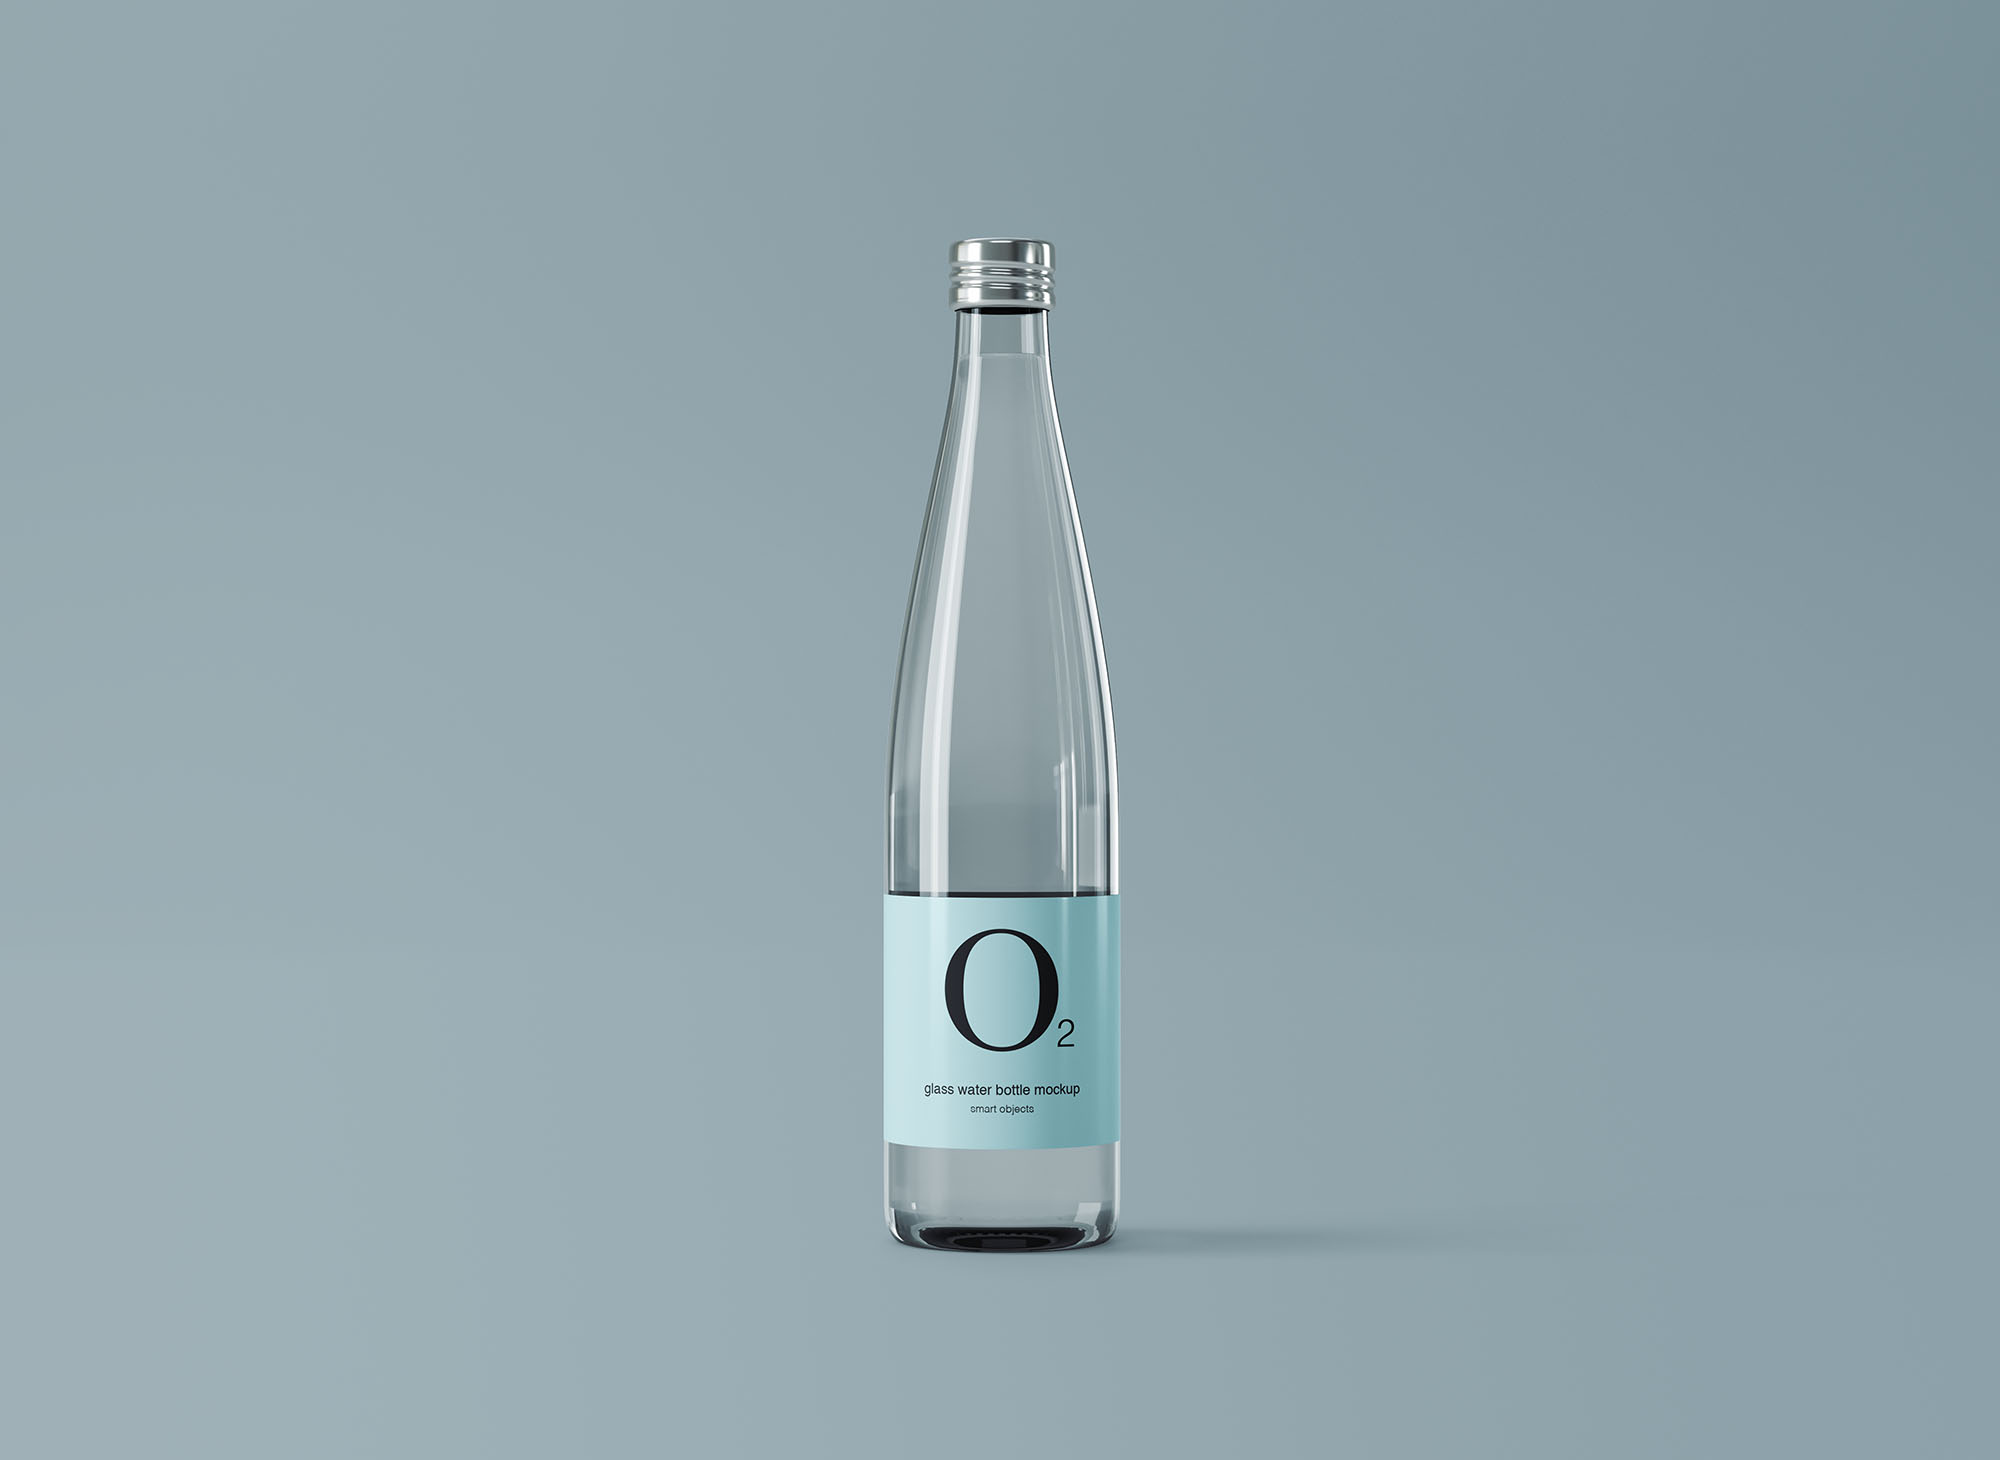 极简设计风格玻璃纯净水矿泉水瓶外观设计图16设计网精选 Minimal Glass Water Bottle Mockup插图